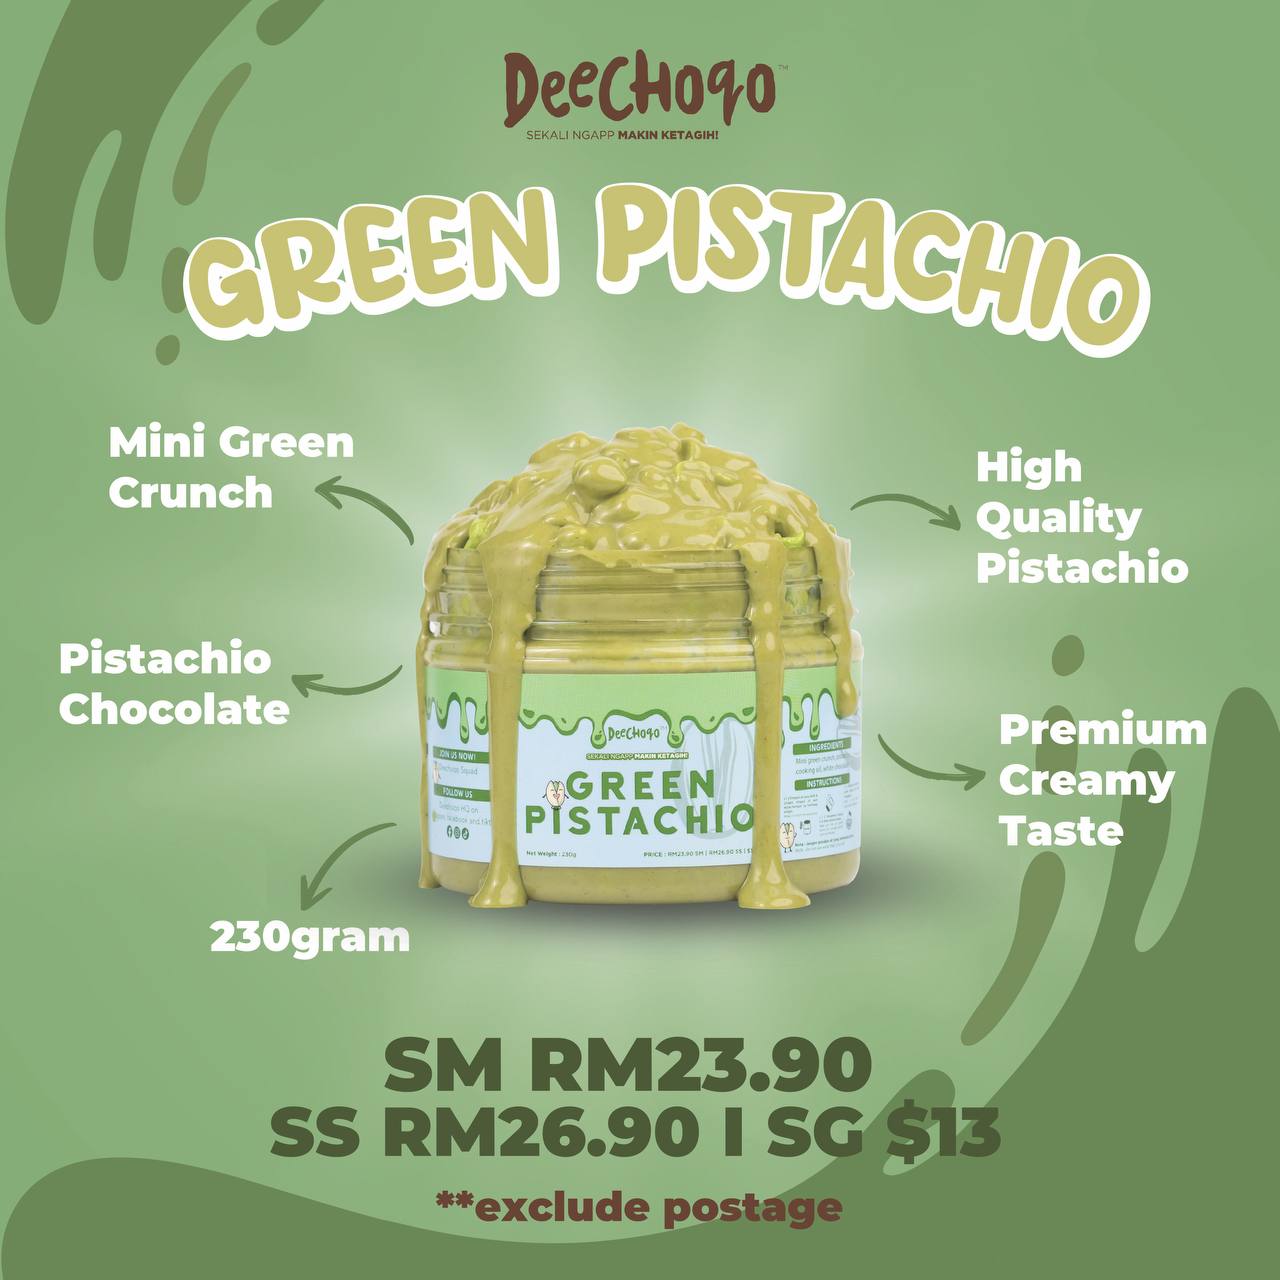 DEECHOQO Green Pistachio